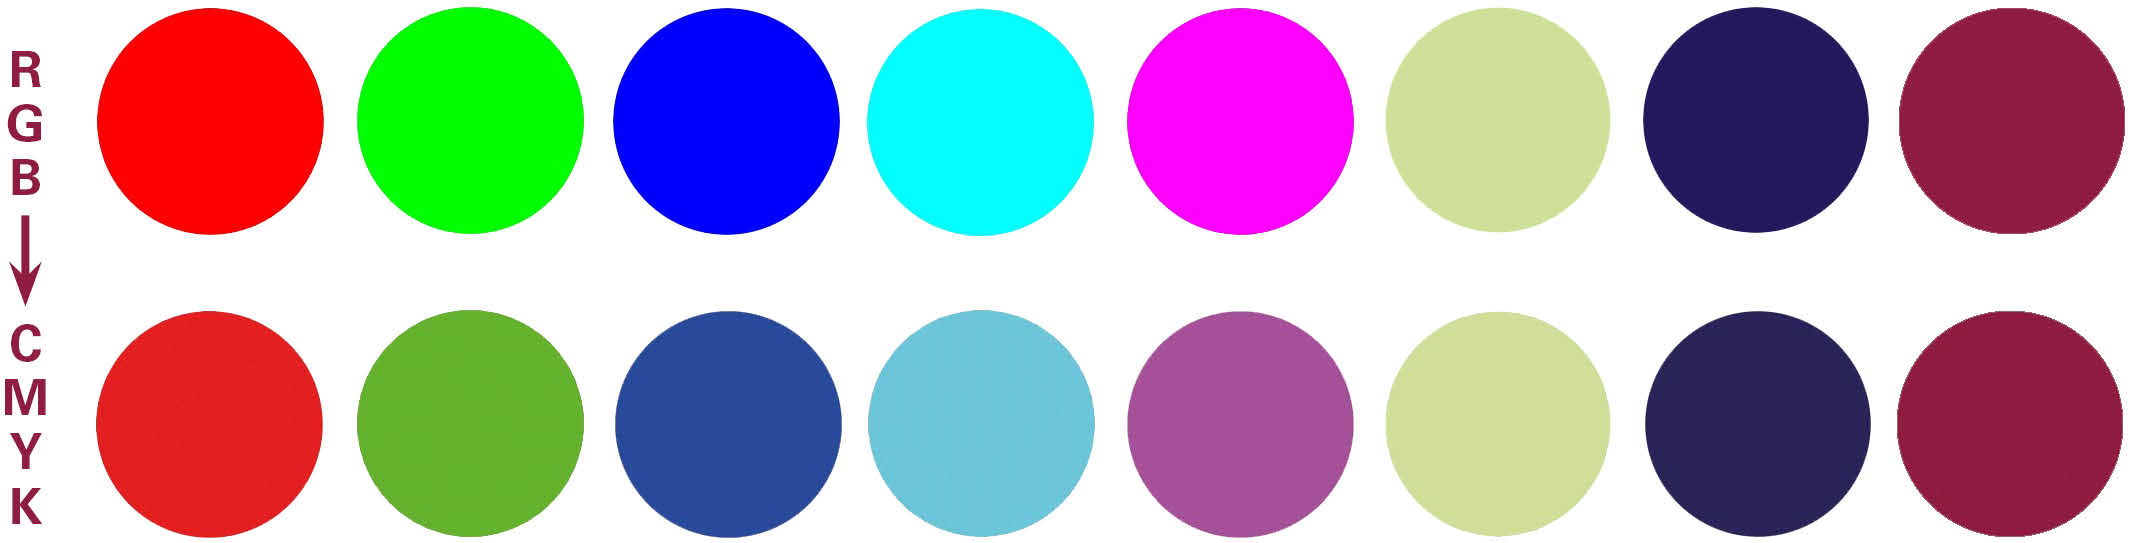 Voorbeelden van omzetting van RGB naar CMYK